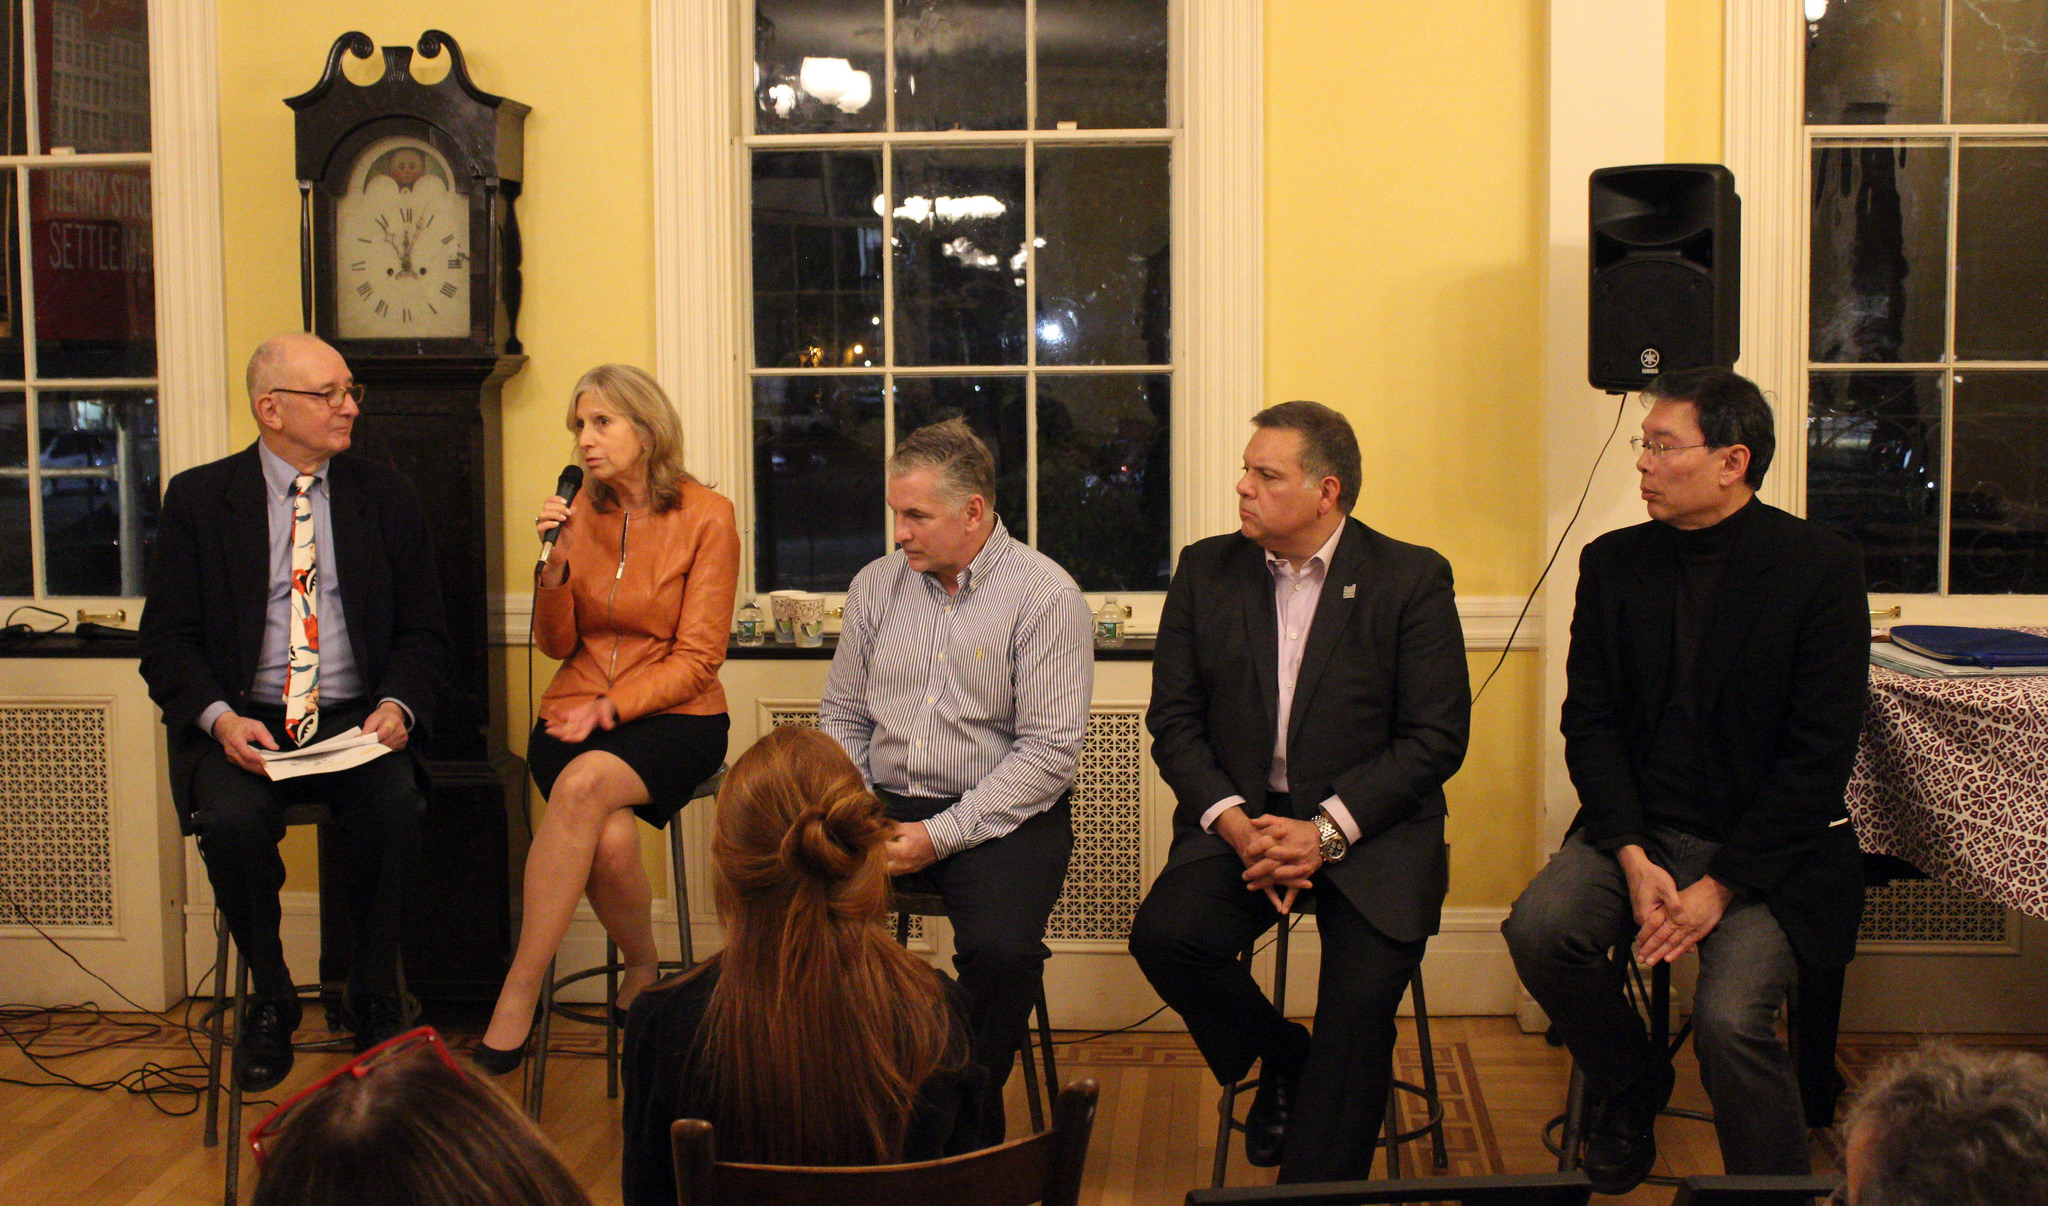 Panel speaks at event at Henry Street Settlement